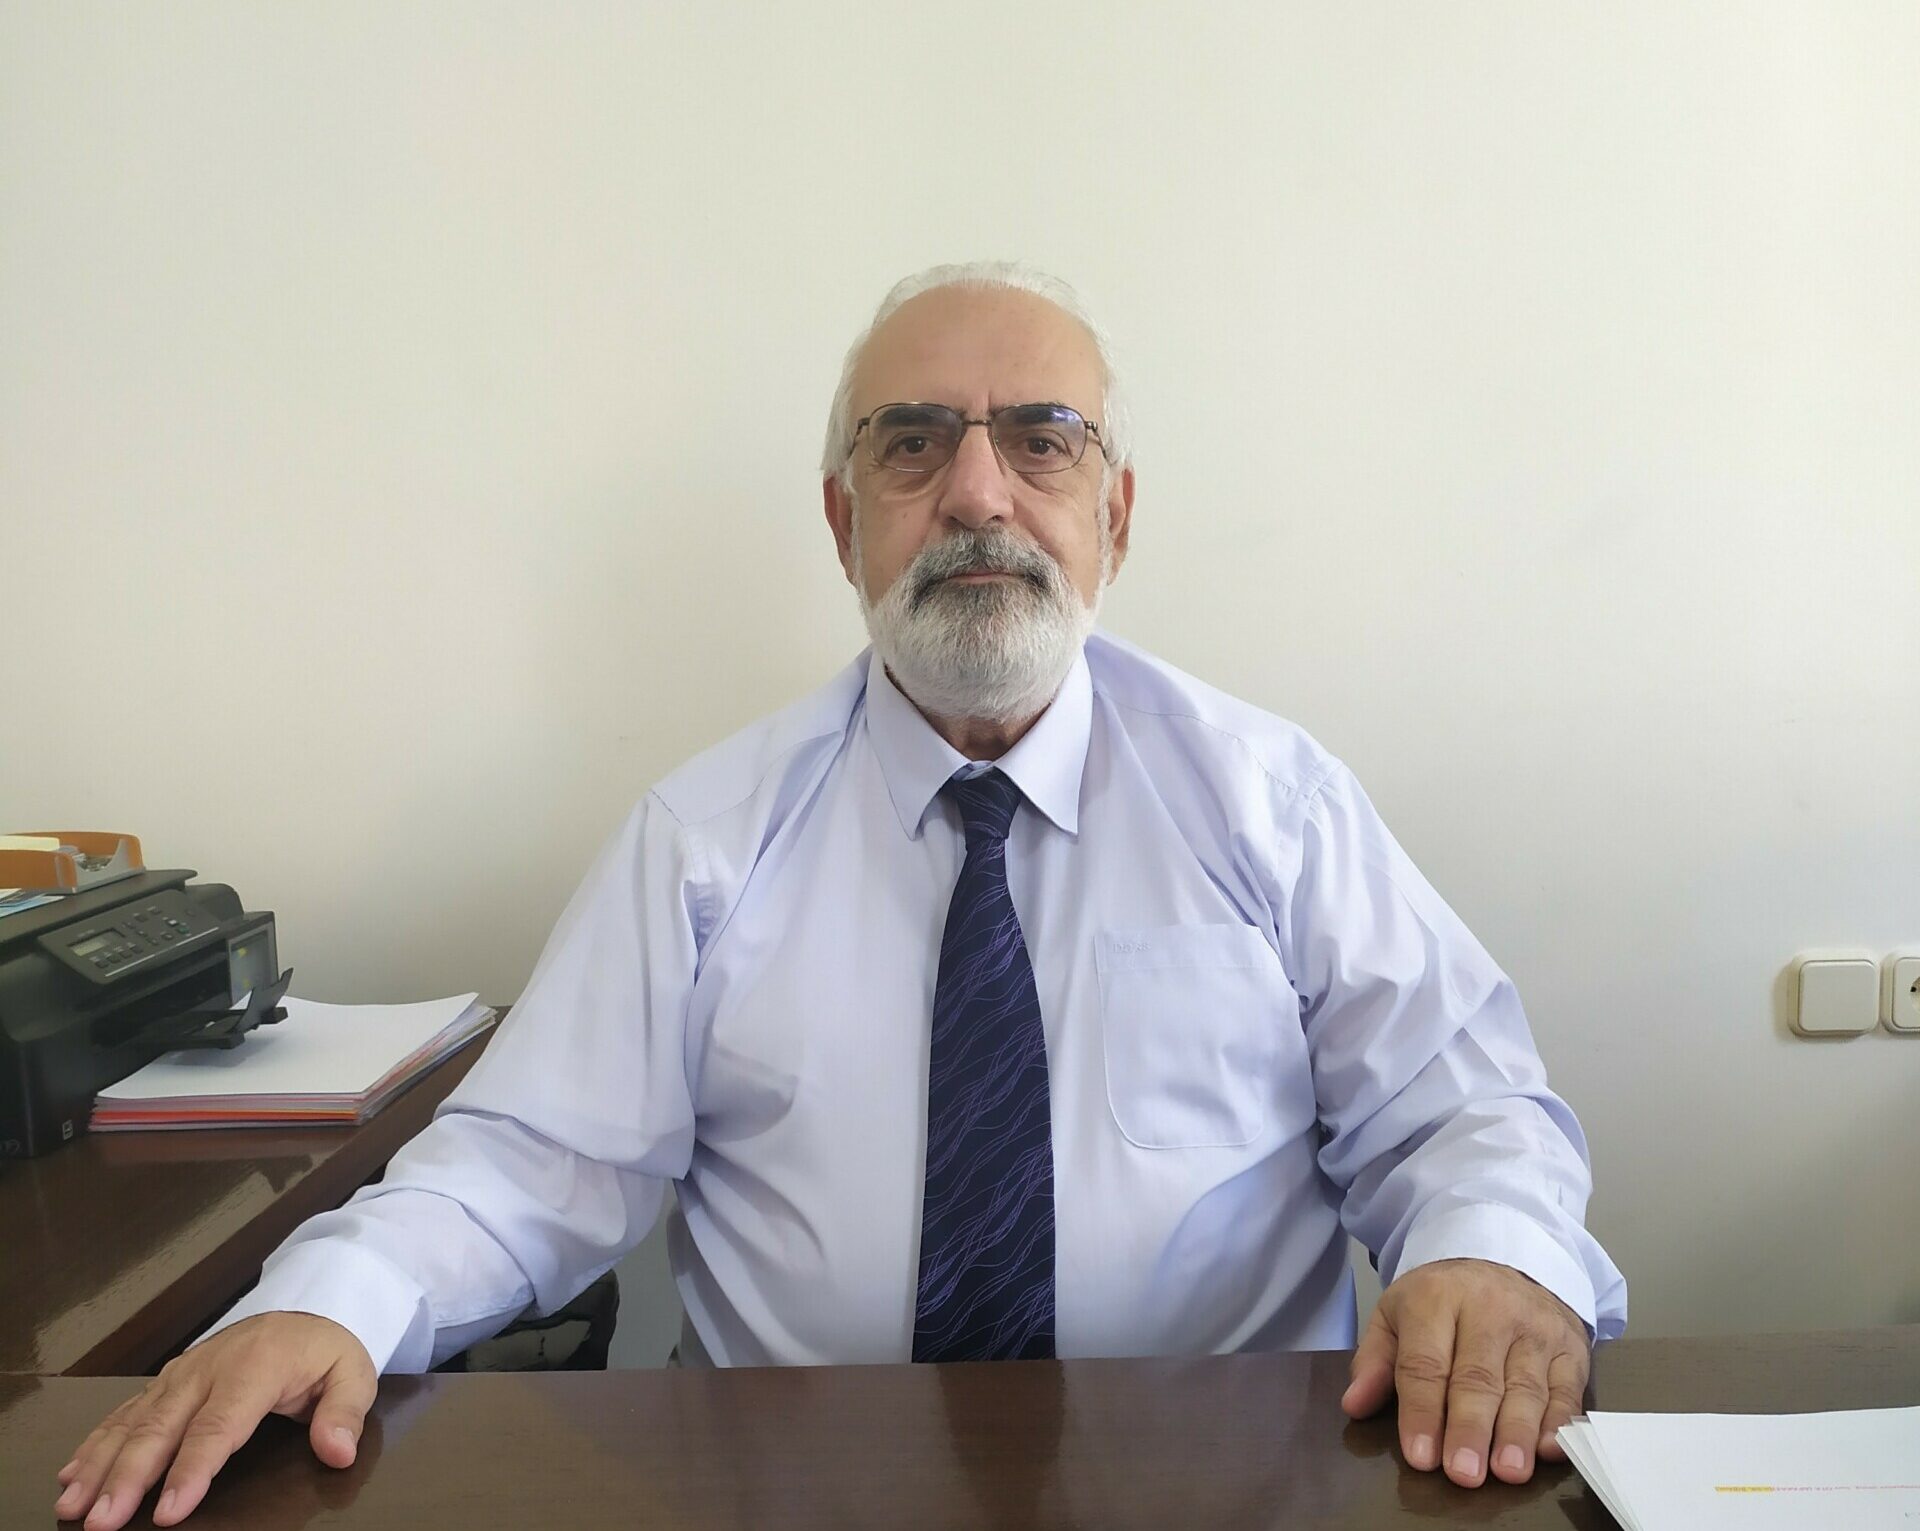 Ο Θεοκλής Βασιλειάδης, Πρόεδρος και Διευθύνων Σύμβουλος της εταιρείας «Specisoft Ανάπτυξη προγραμμάτων Η/Υ Α.Ε»